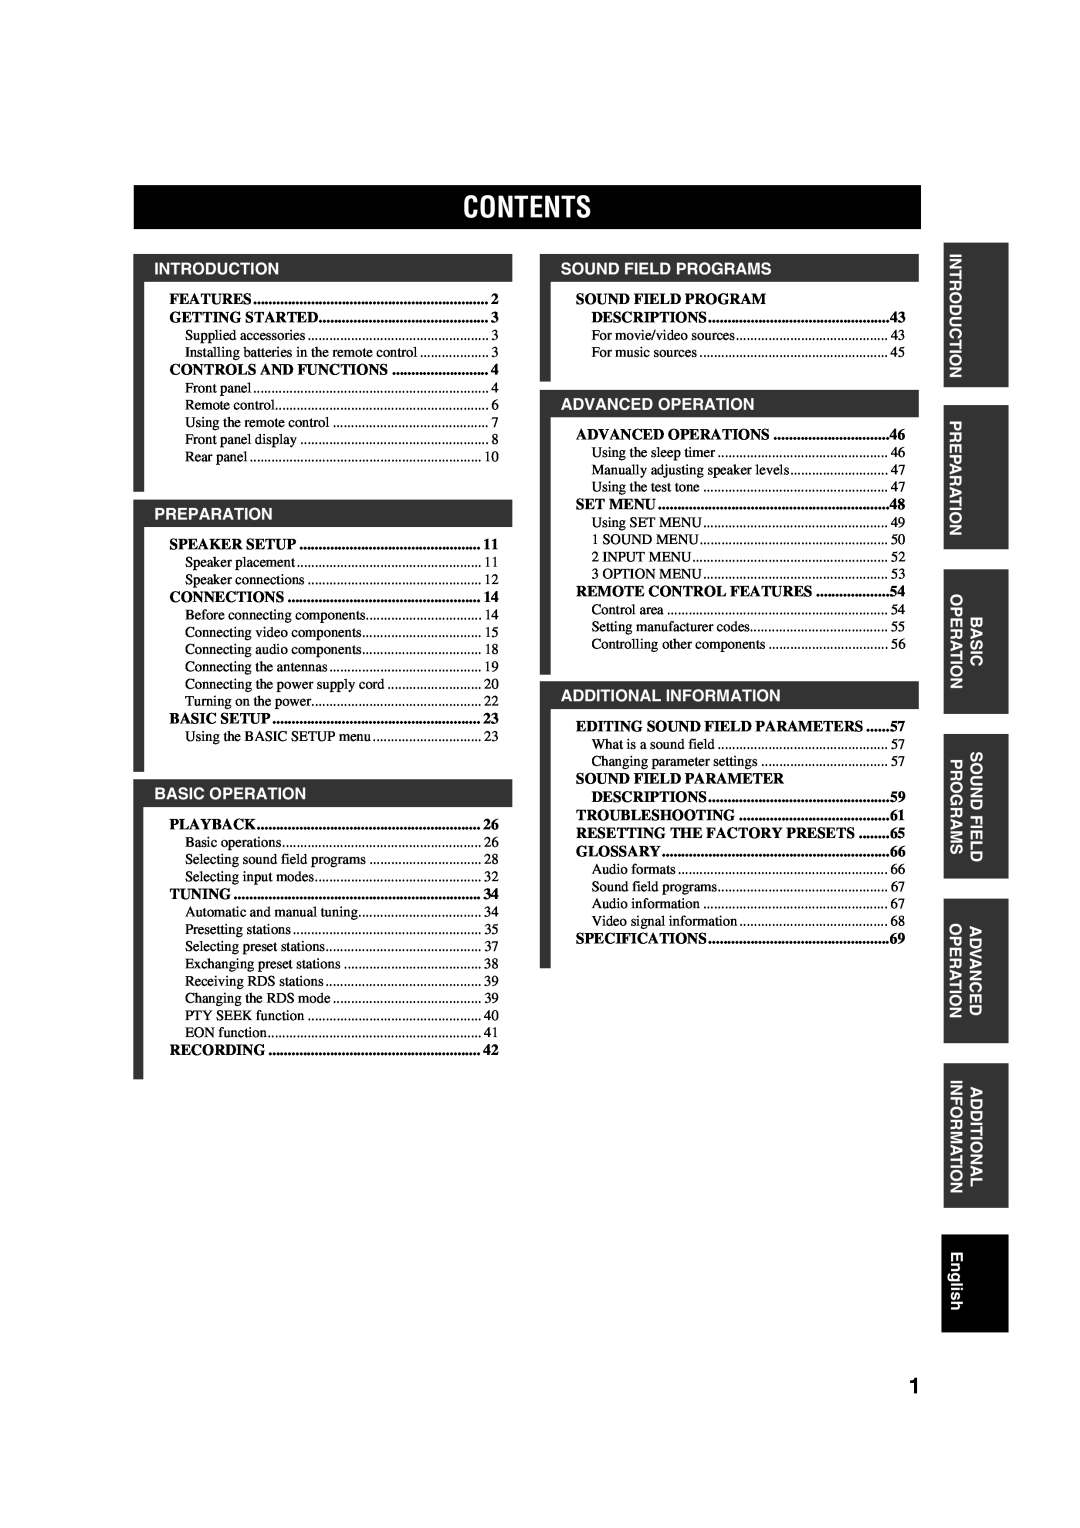 Yamaha RX-V450 owner manual Contents 